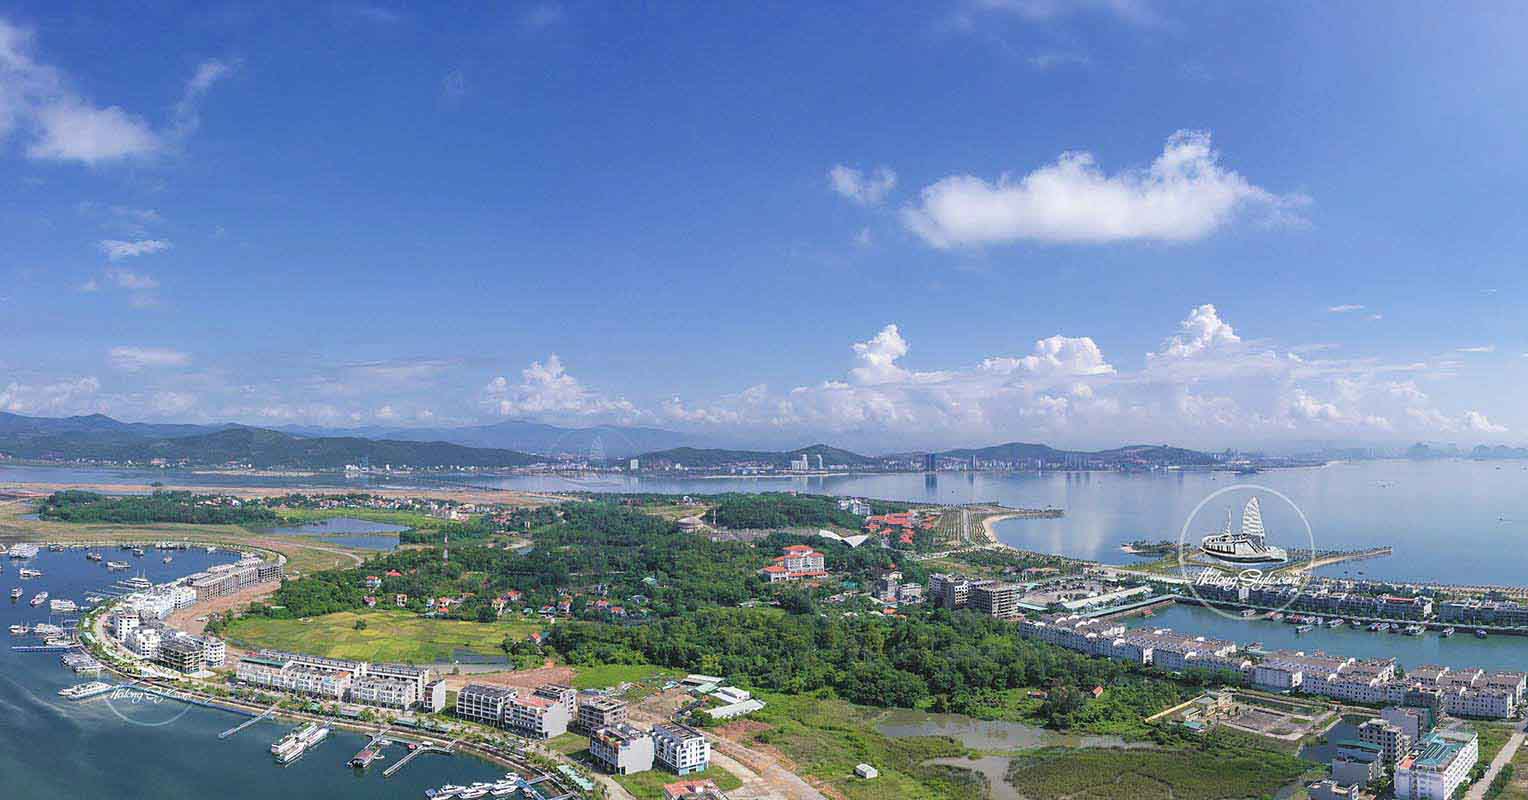 Toàn cảnh Cảng tàu Quốc tế Tuần Châu từ trên cao. Ảnh: halongstyle